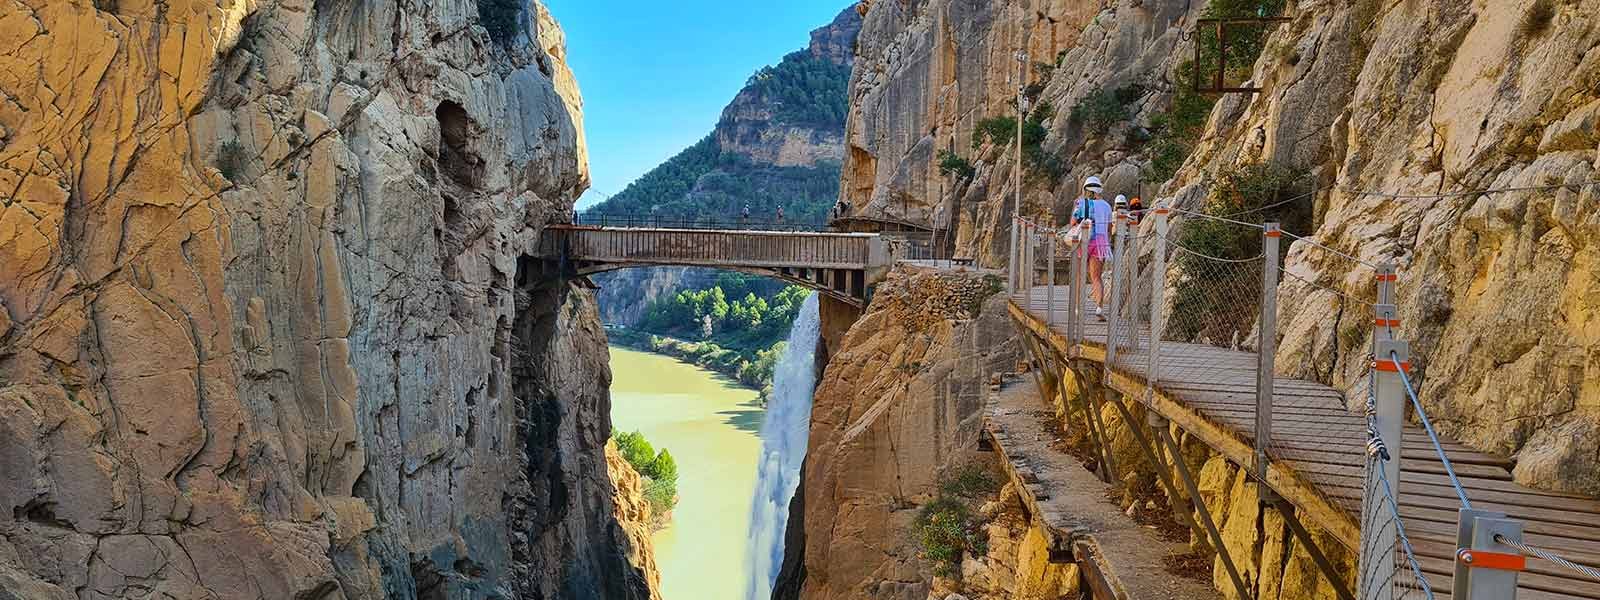 De waterval en brug van Caminito del Rey